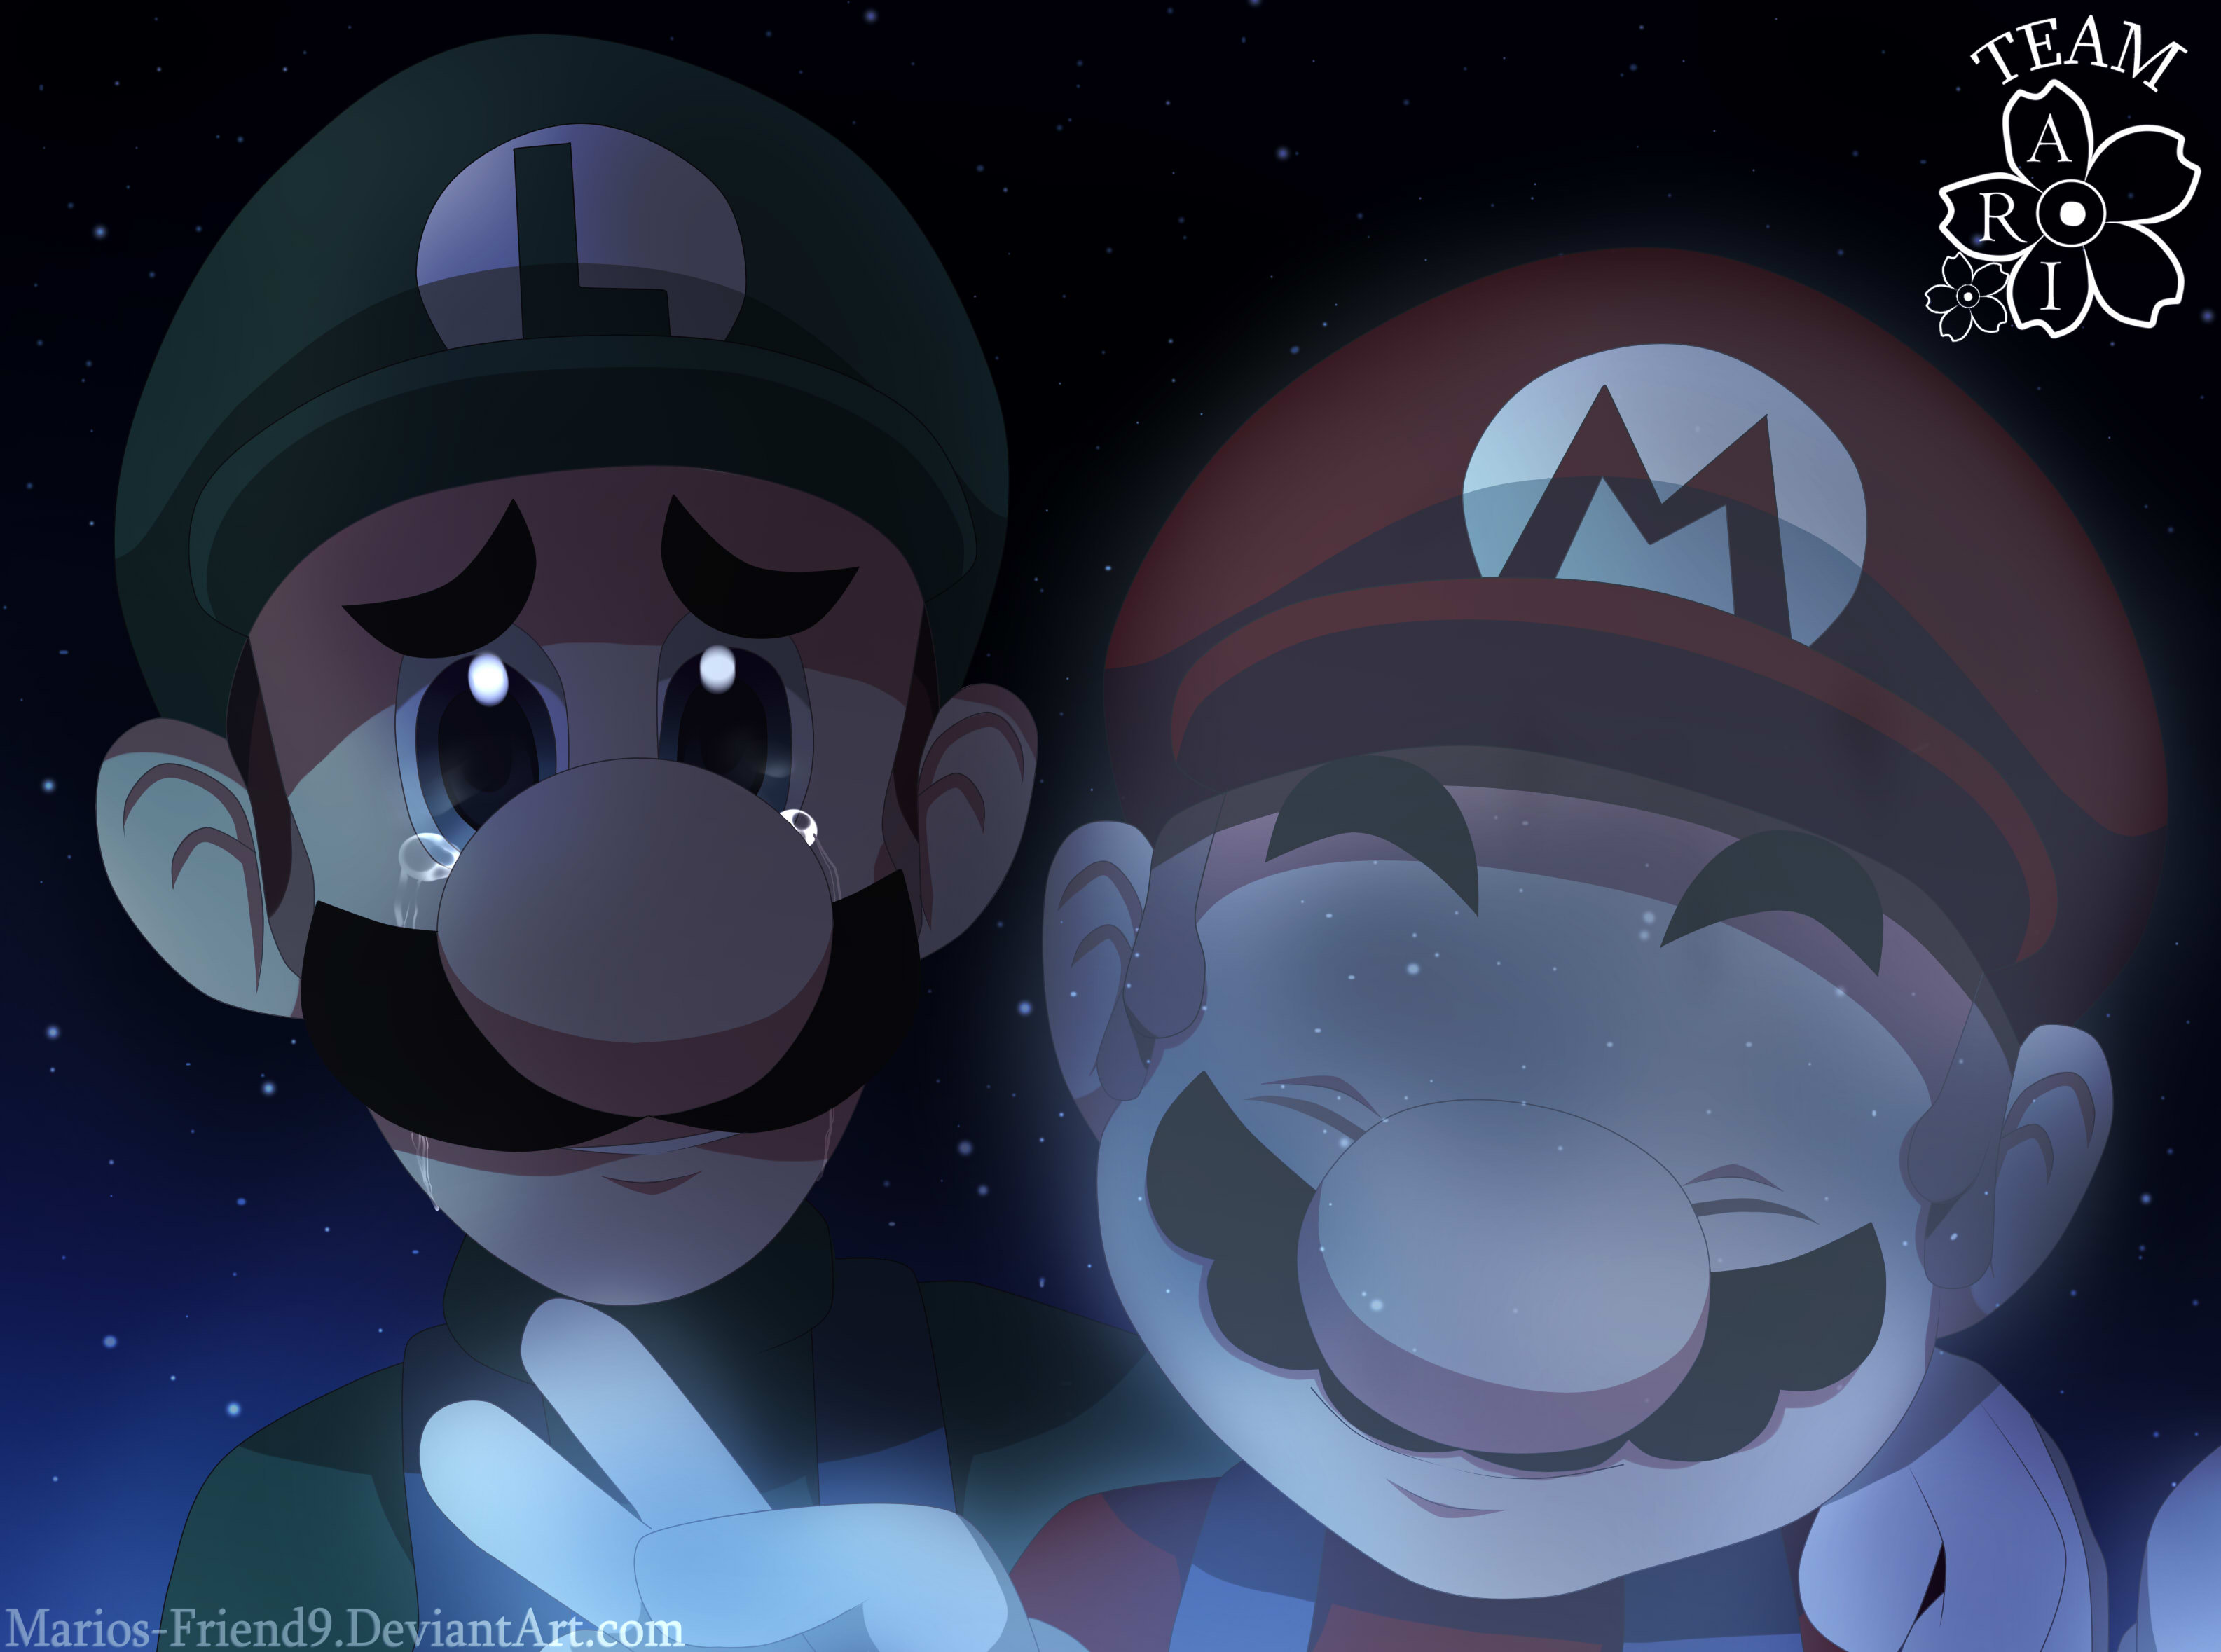 Mario the music box. Mario the Music Box Arc. Mario the Music Box Луиджи. Mario the Music Box Remastered. Mario the Music Box Arc Wonderland.